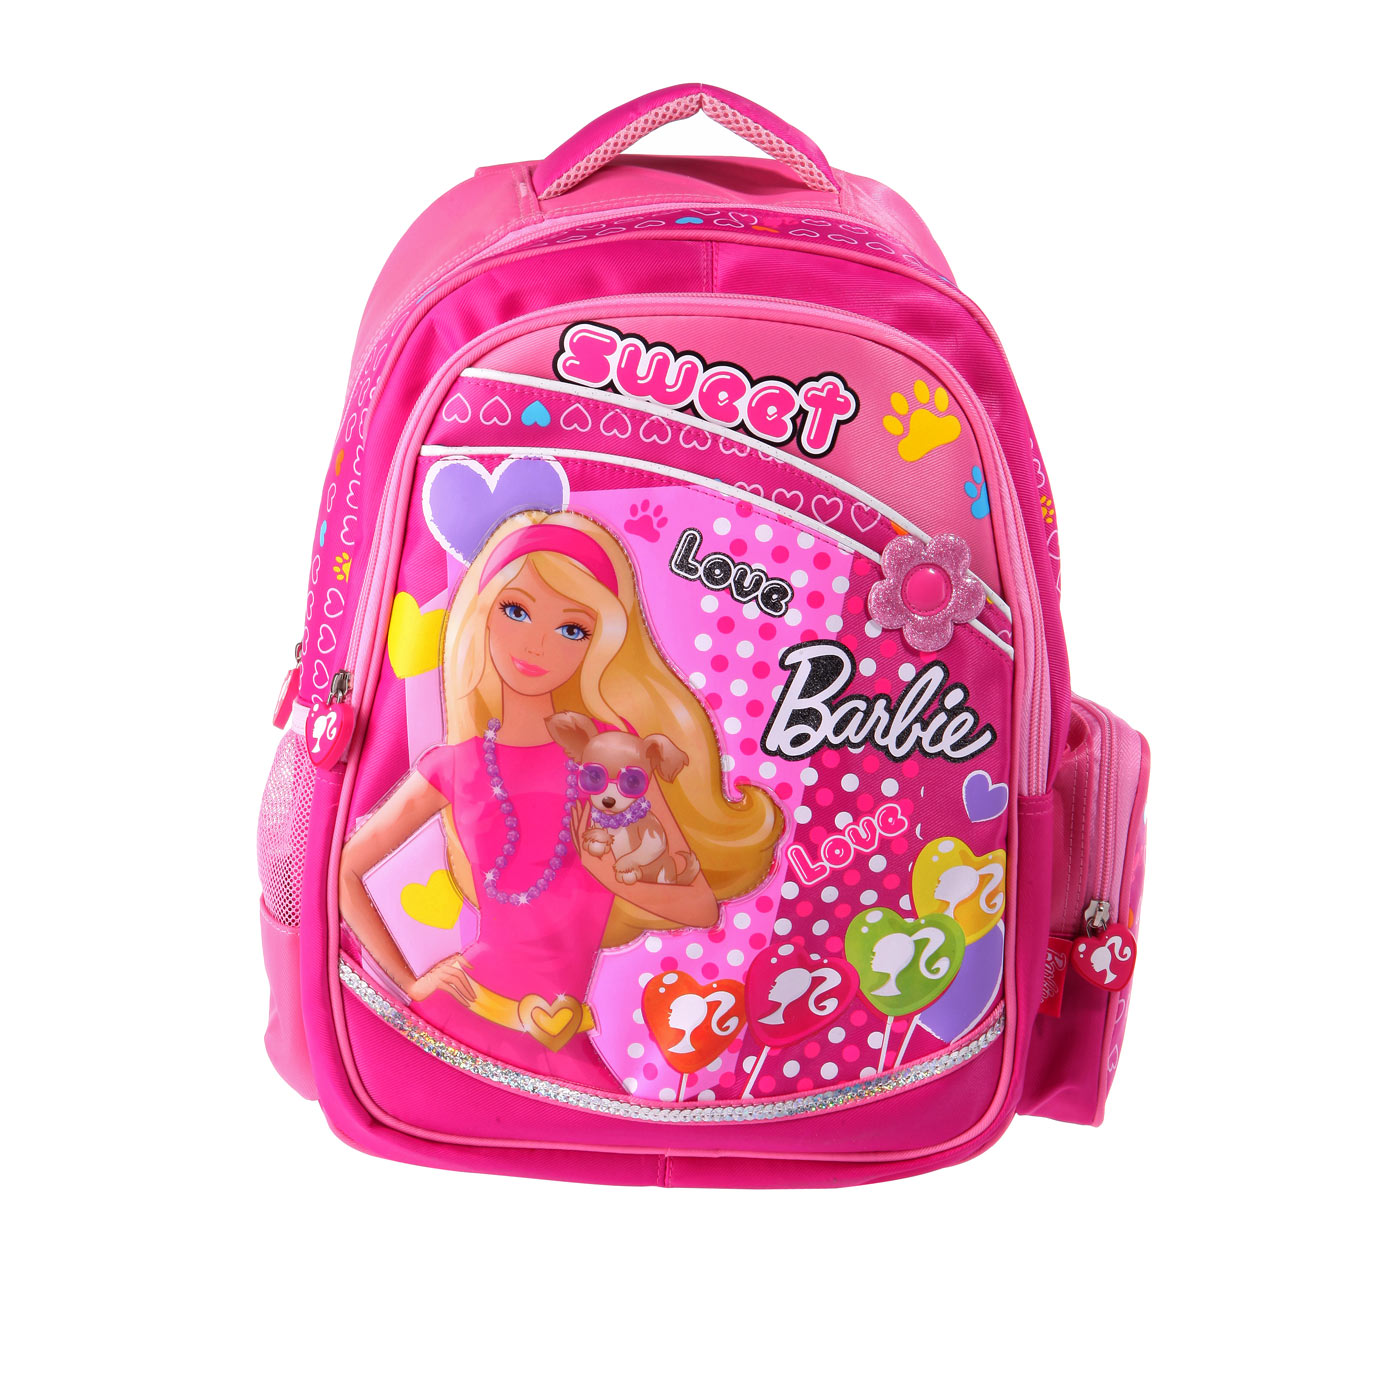 卡迪奴 朵拉可爱小学生双肩书包 女生女童学生背包1-2年级 粉色_温馨宝吧